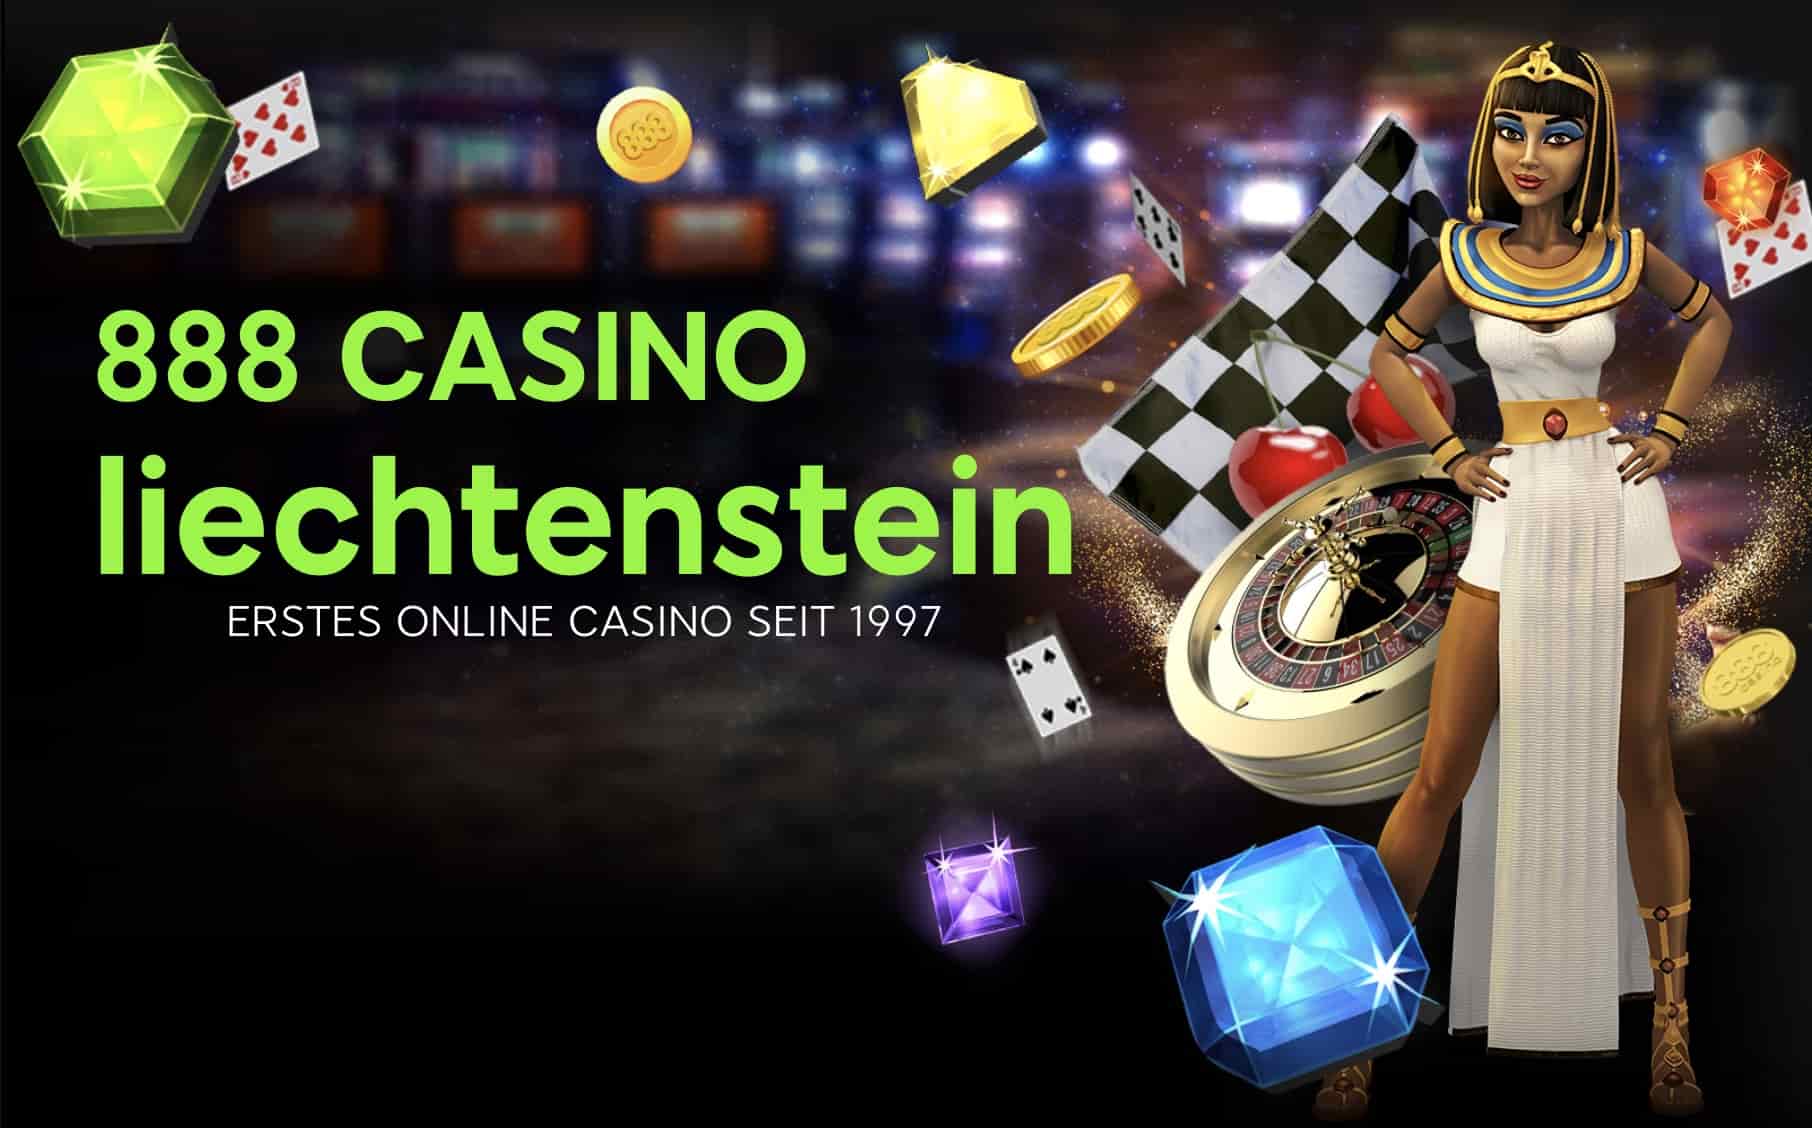 888 Online Casinos Liechtenstein